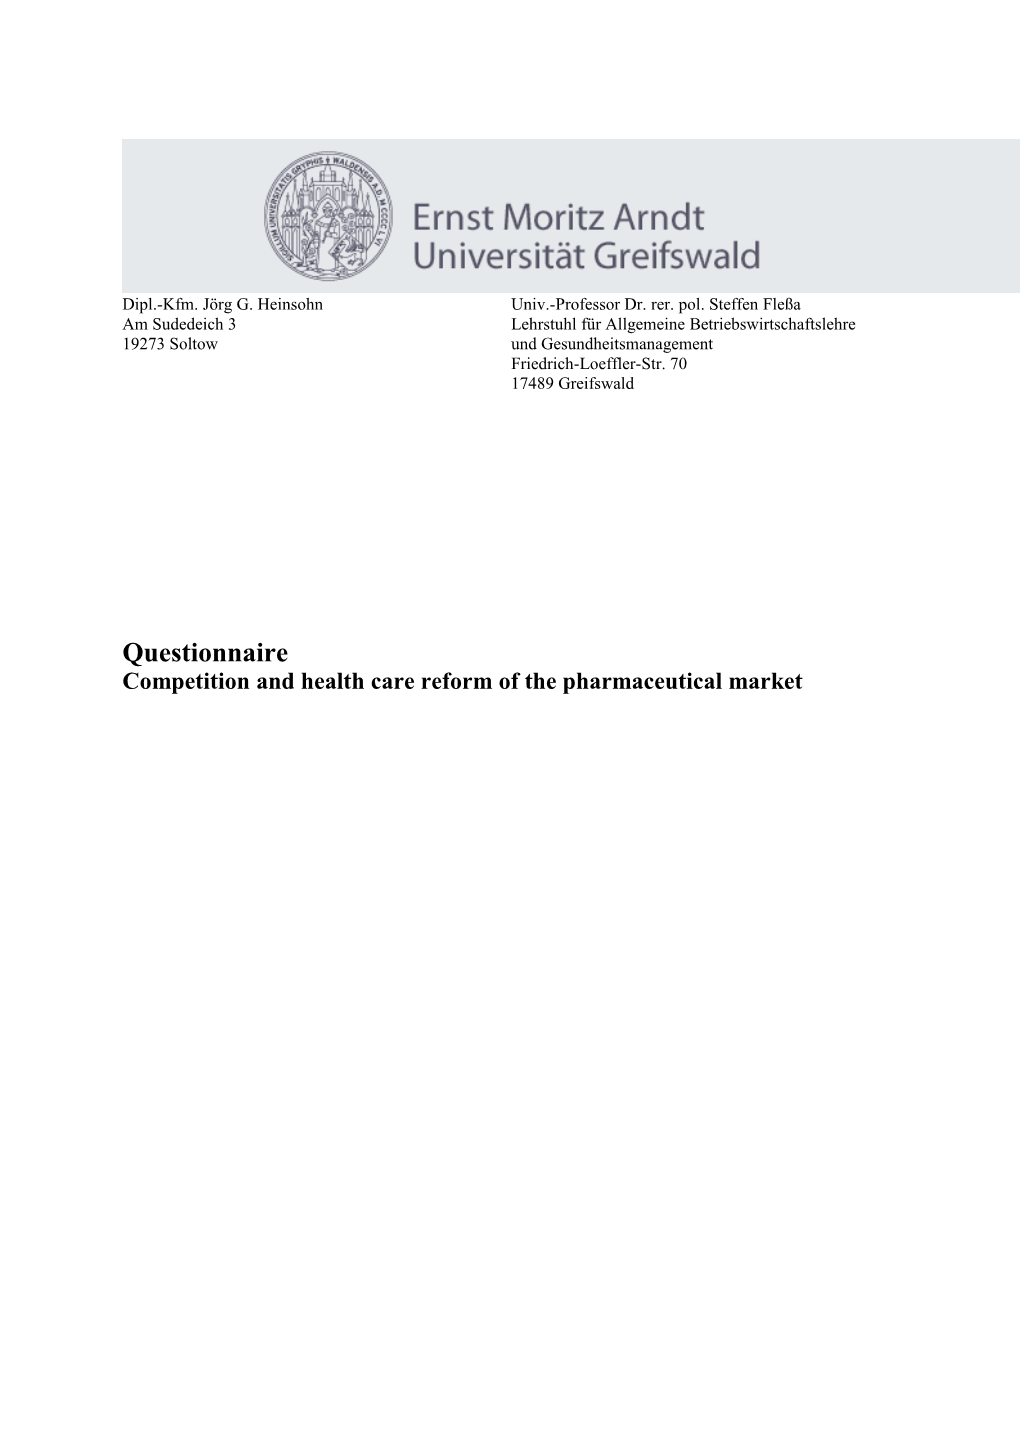 Fragebogen Zur Dissertation Wettbewerb Und Gesundheitsreform Im Apothekenmarkt